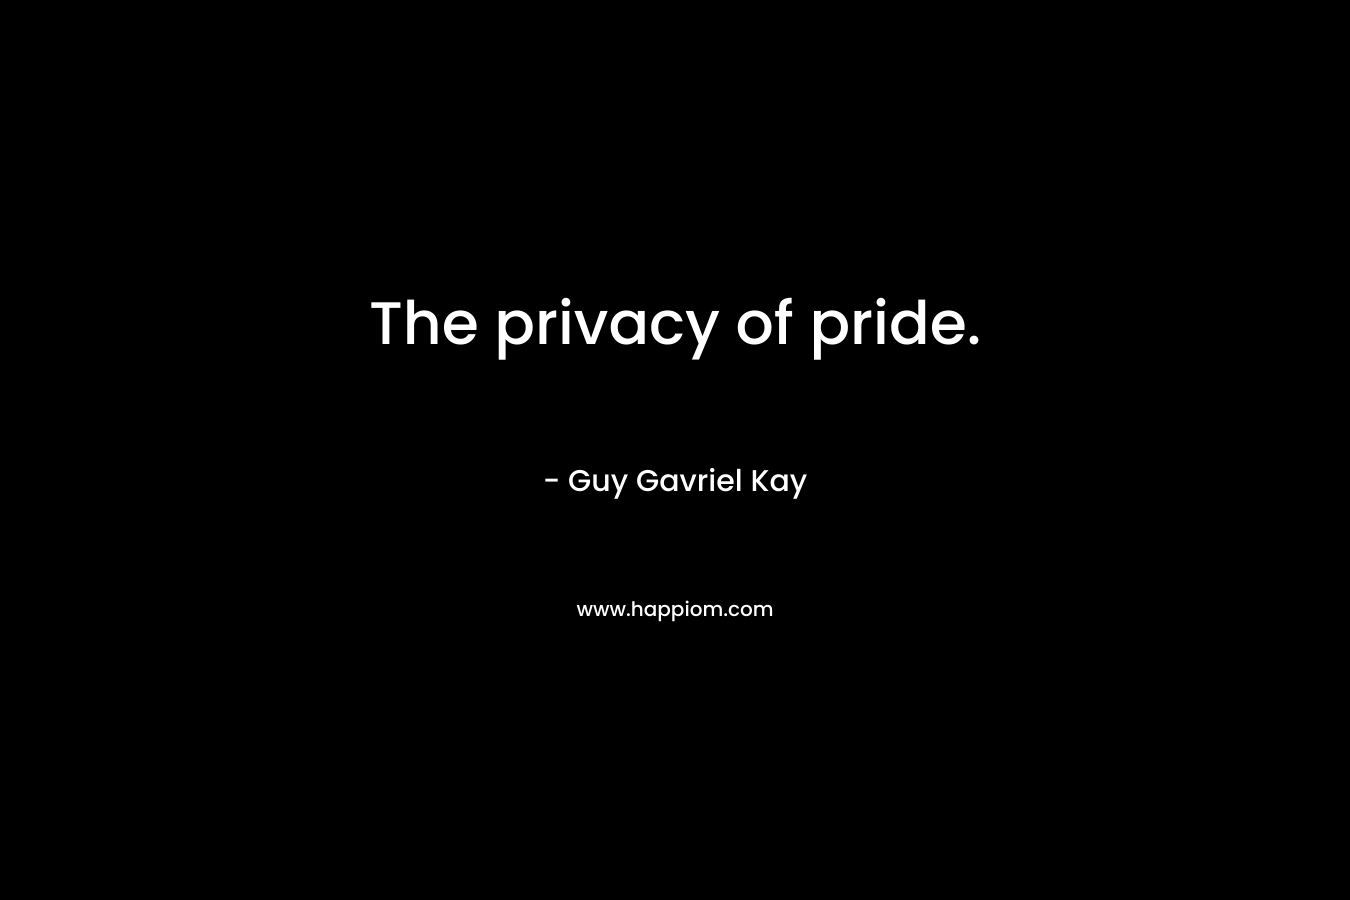 The privacy of pride. – Guy Gavriel Kay